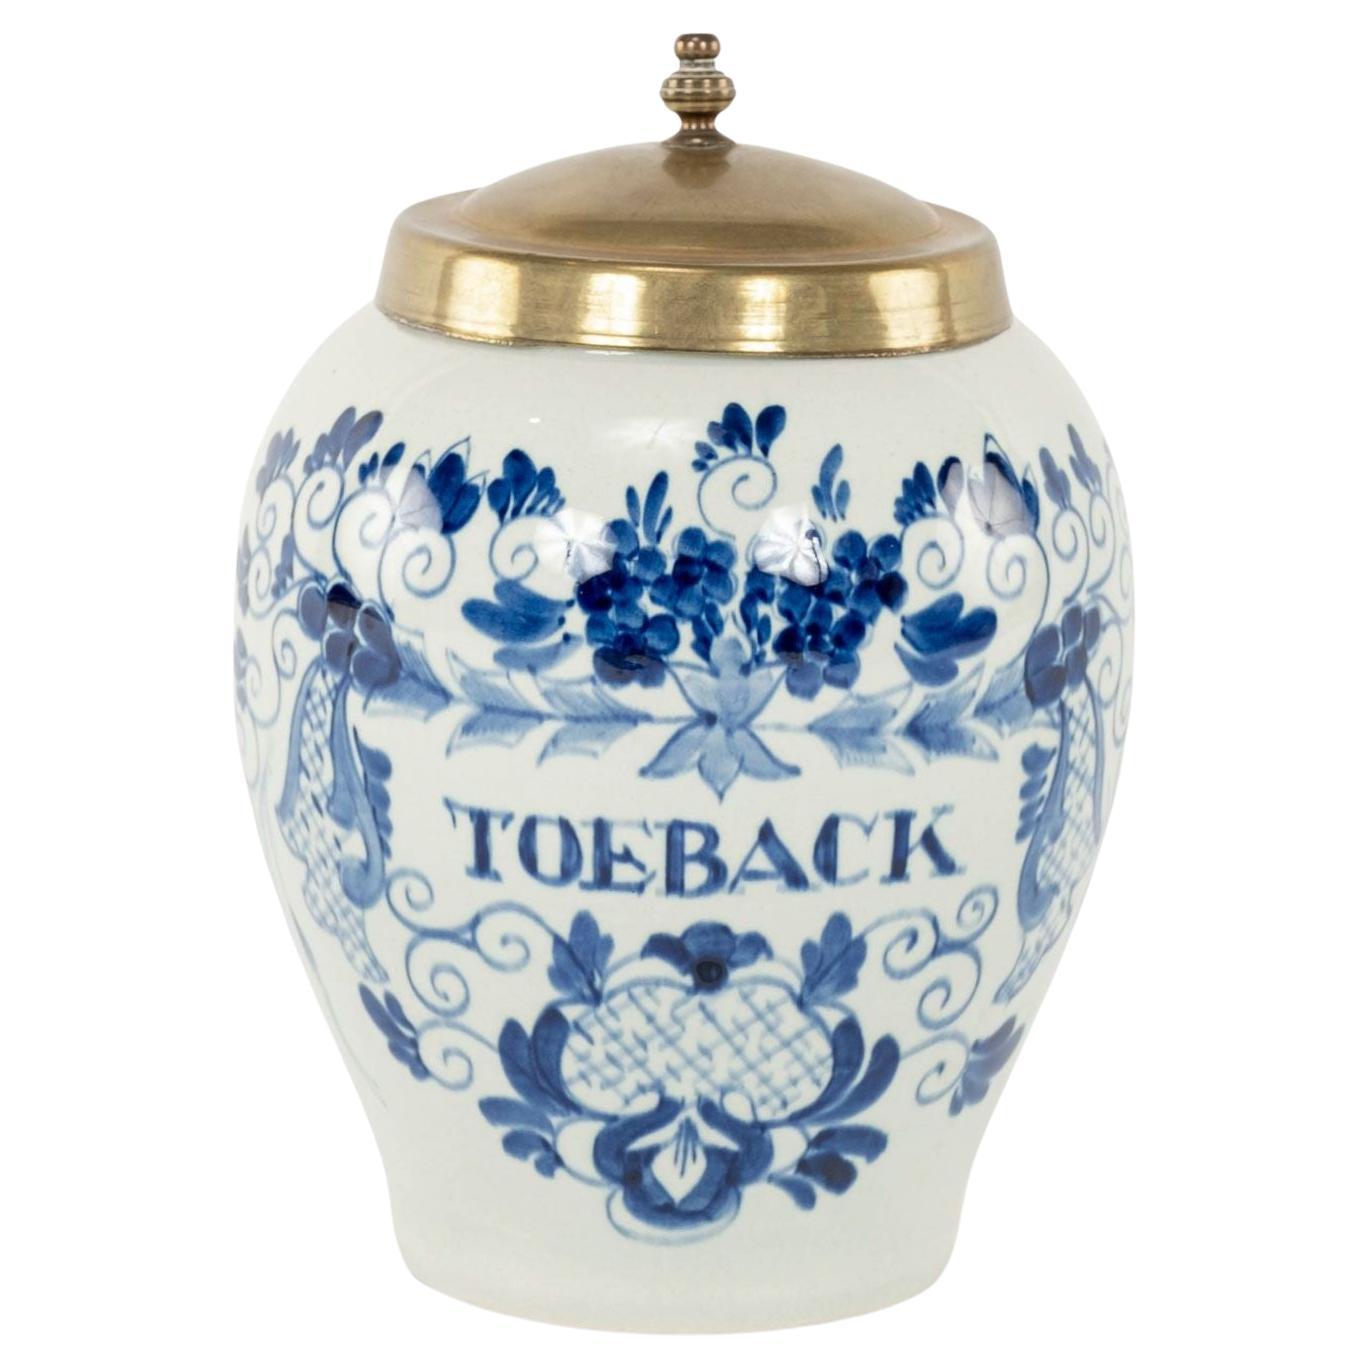 Pot à tabac Toeback de Delft bleu et blanc